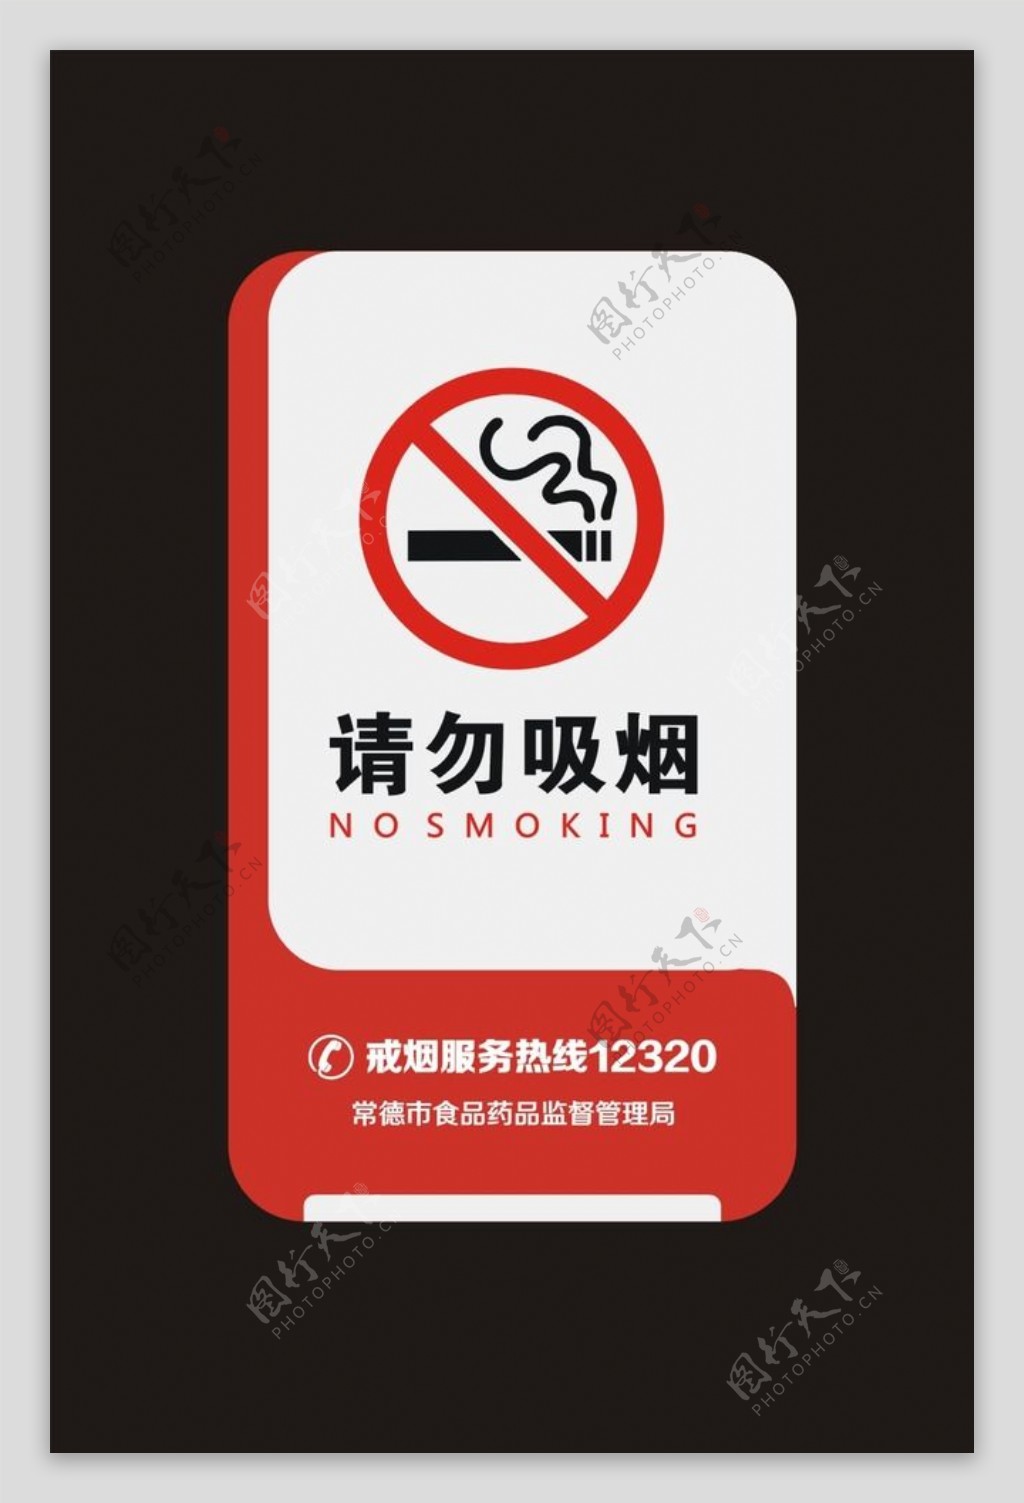 2018全国单位规范禁烟矢标识